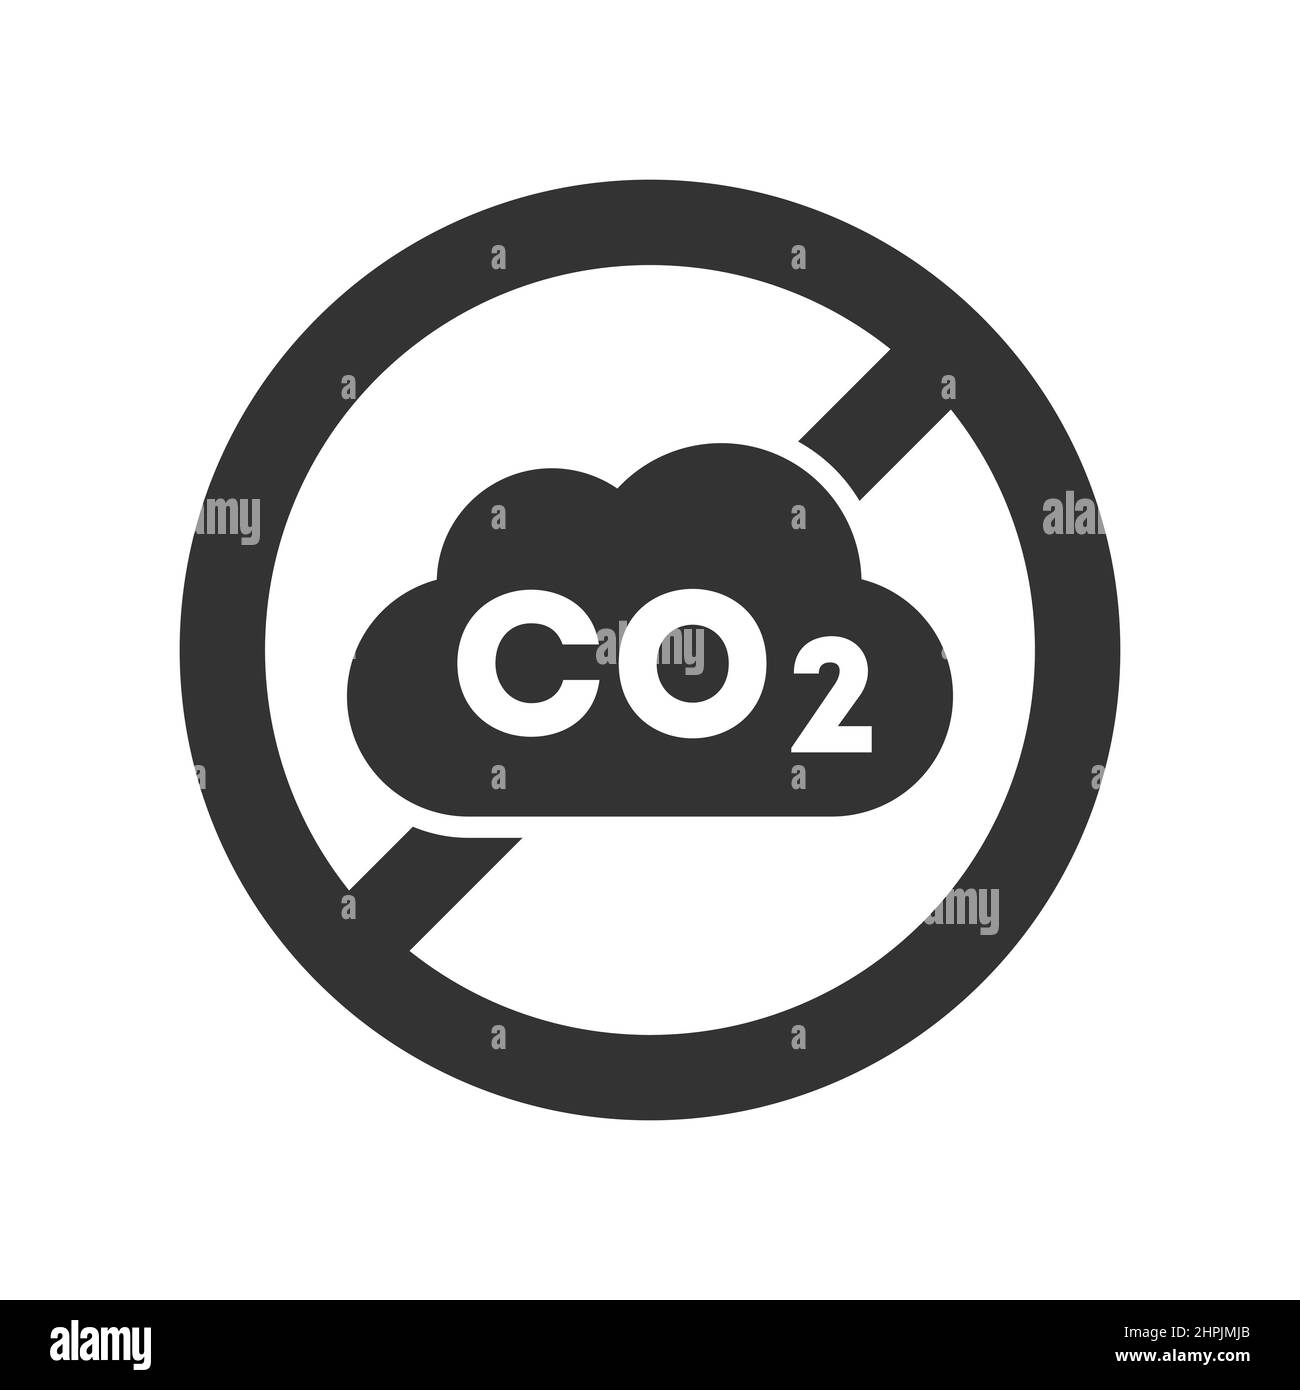 CO2 Verbotenes Symbol. Kohlendioxid-Schild im Kreis durchgestrichen. Kein CO2-Symbol. CO2-Offset-Konzept. Emissionsfrei. Reduzierung der Treibhausgase. Stock Vektor